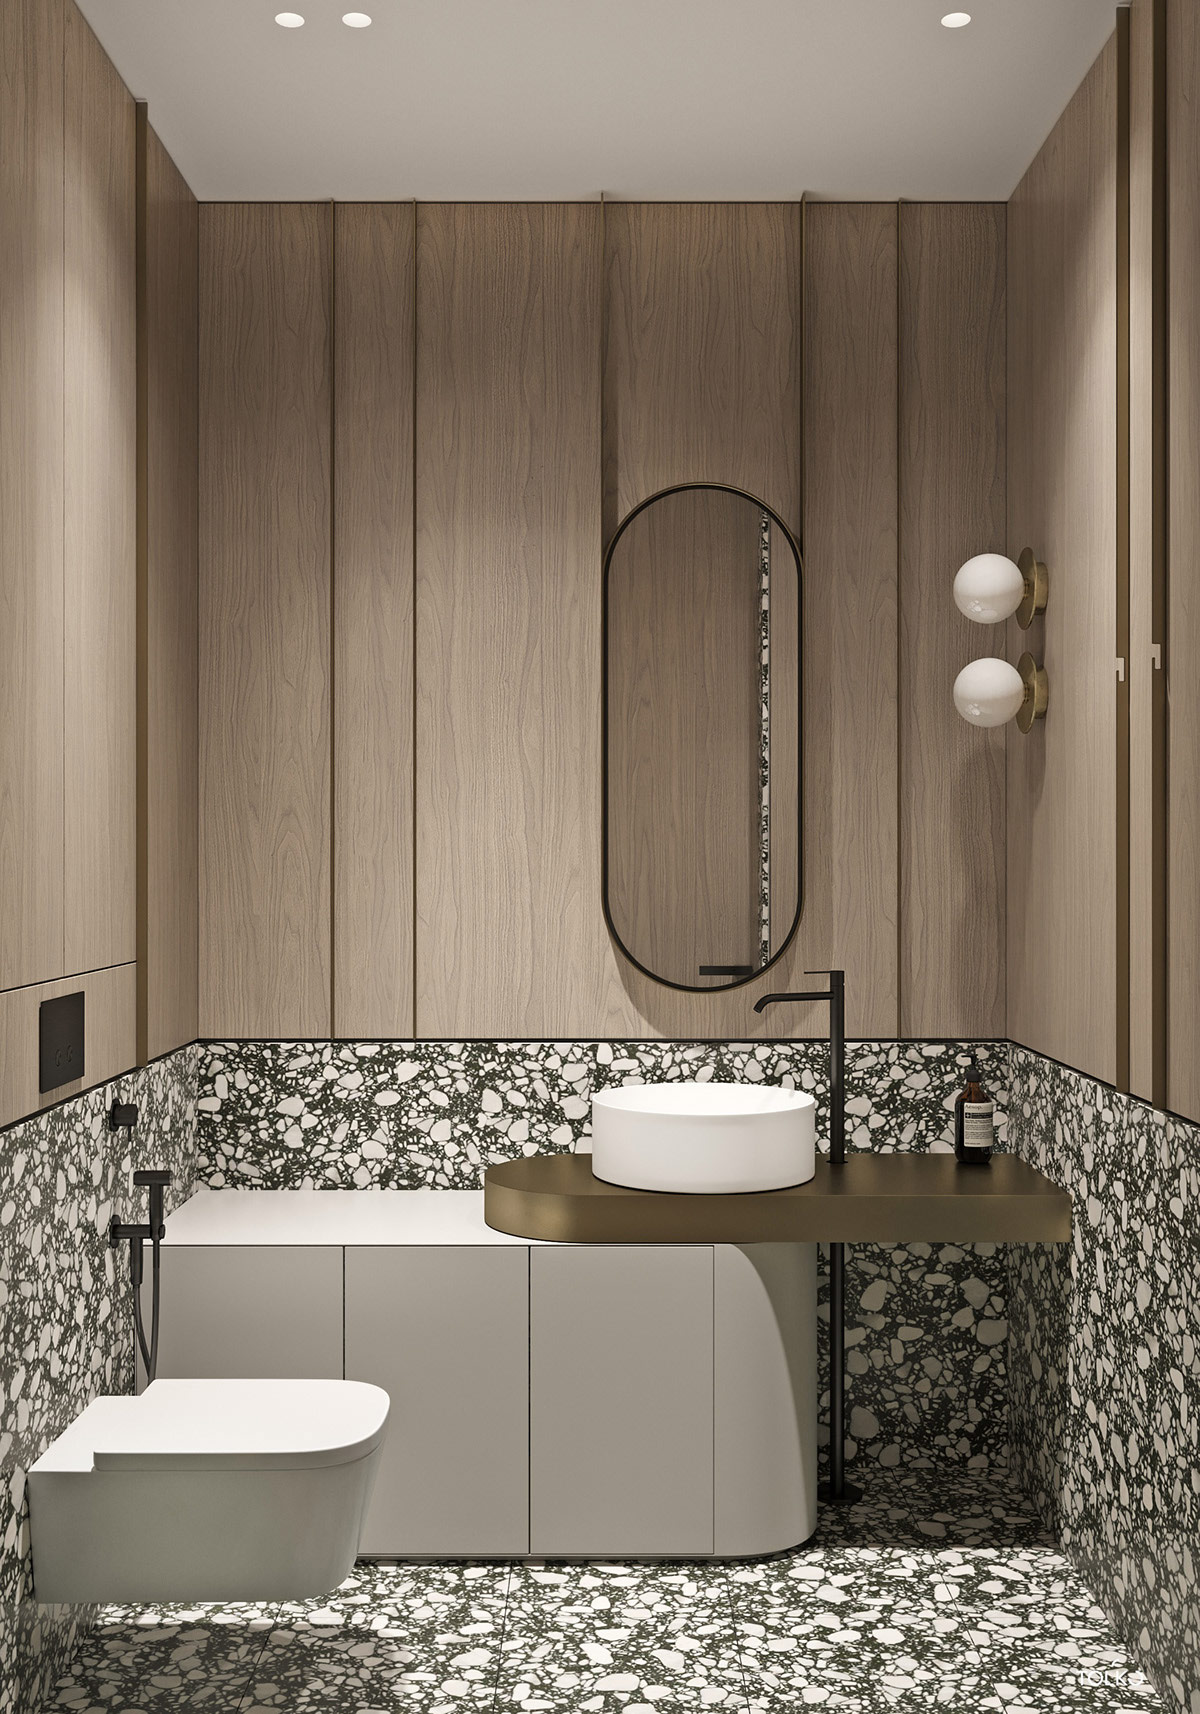 bathroom-tiles-1-600x857.jpg